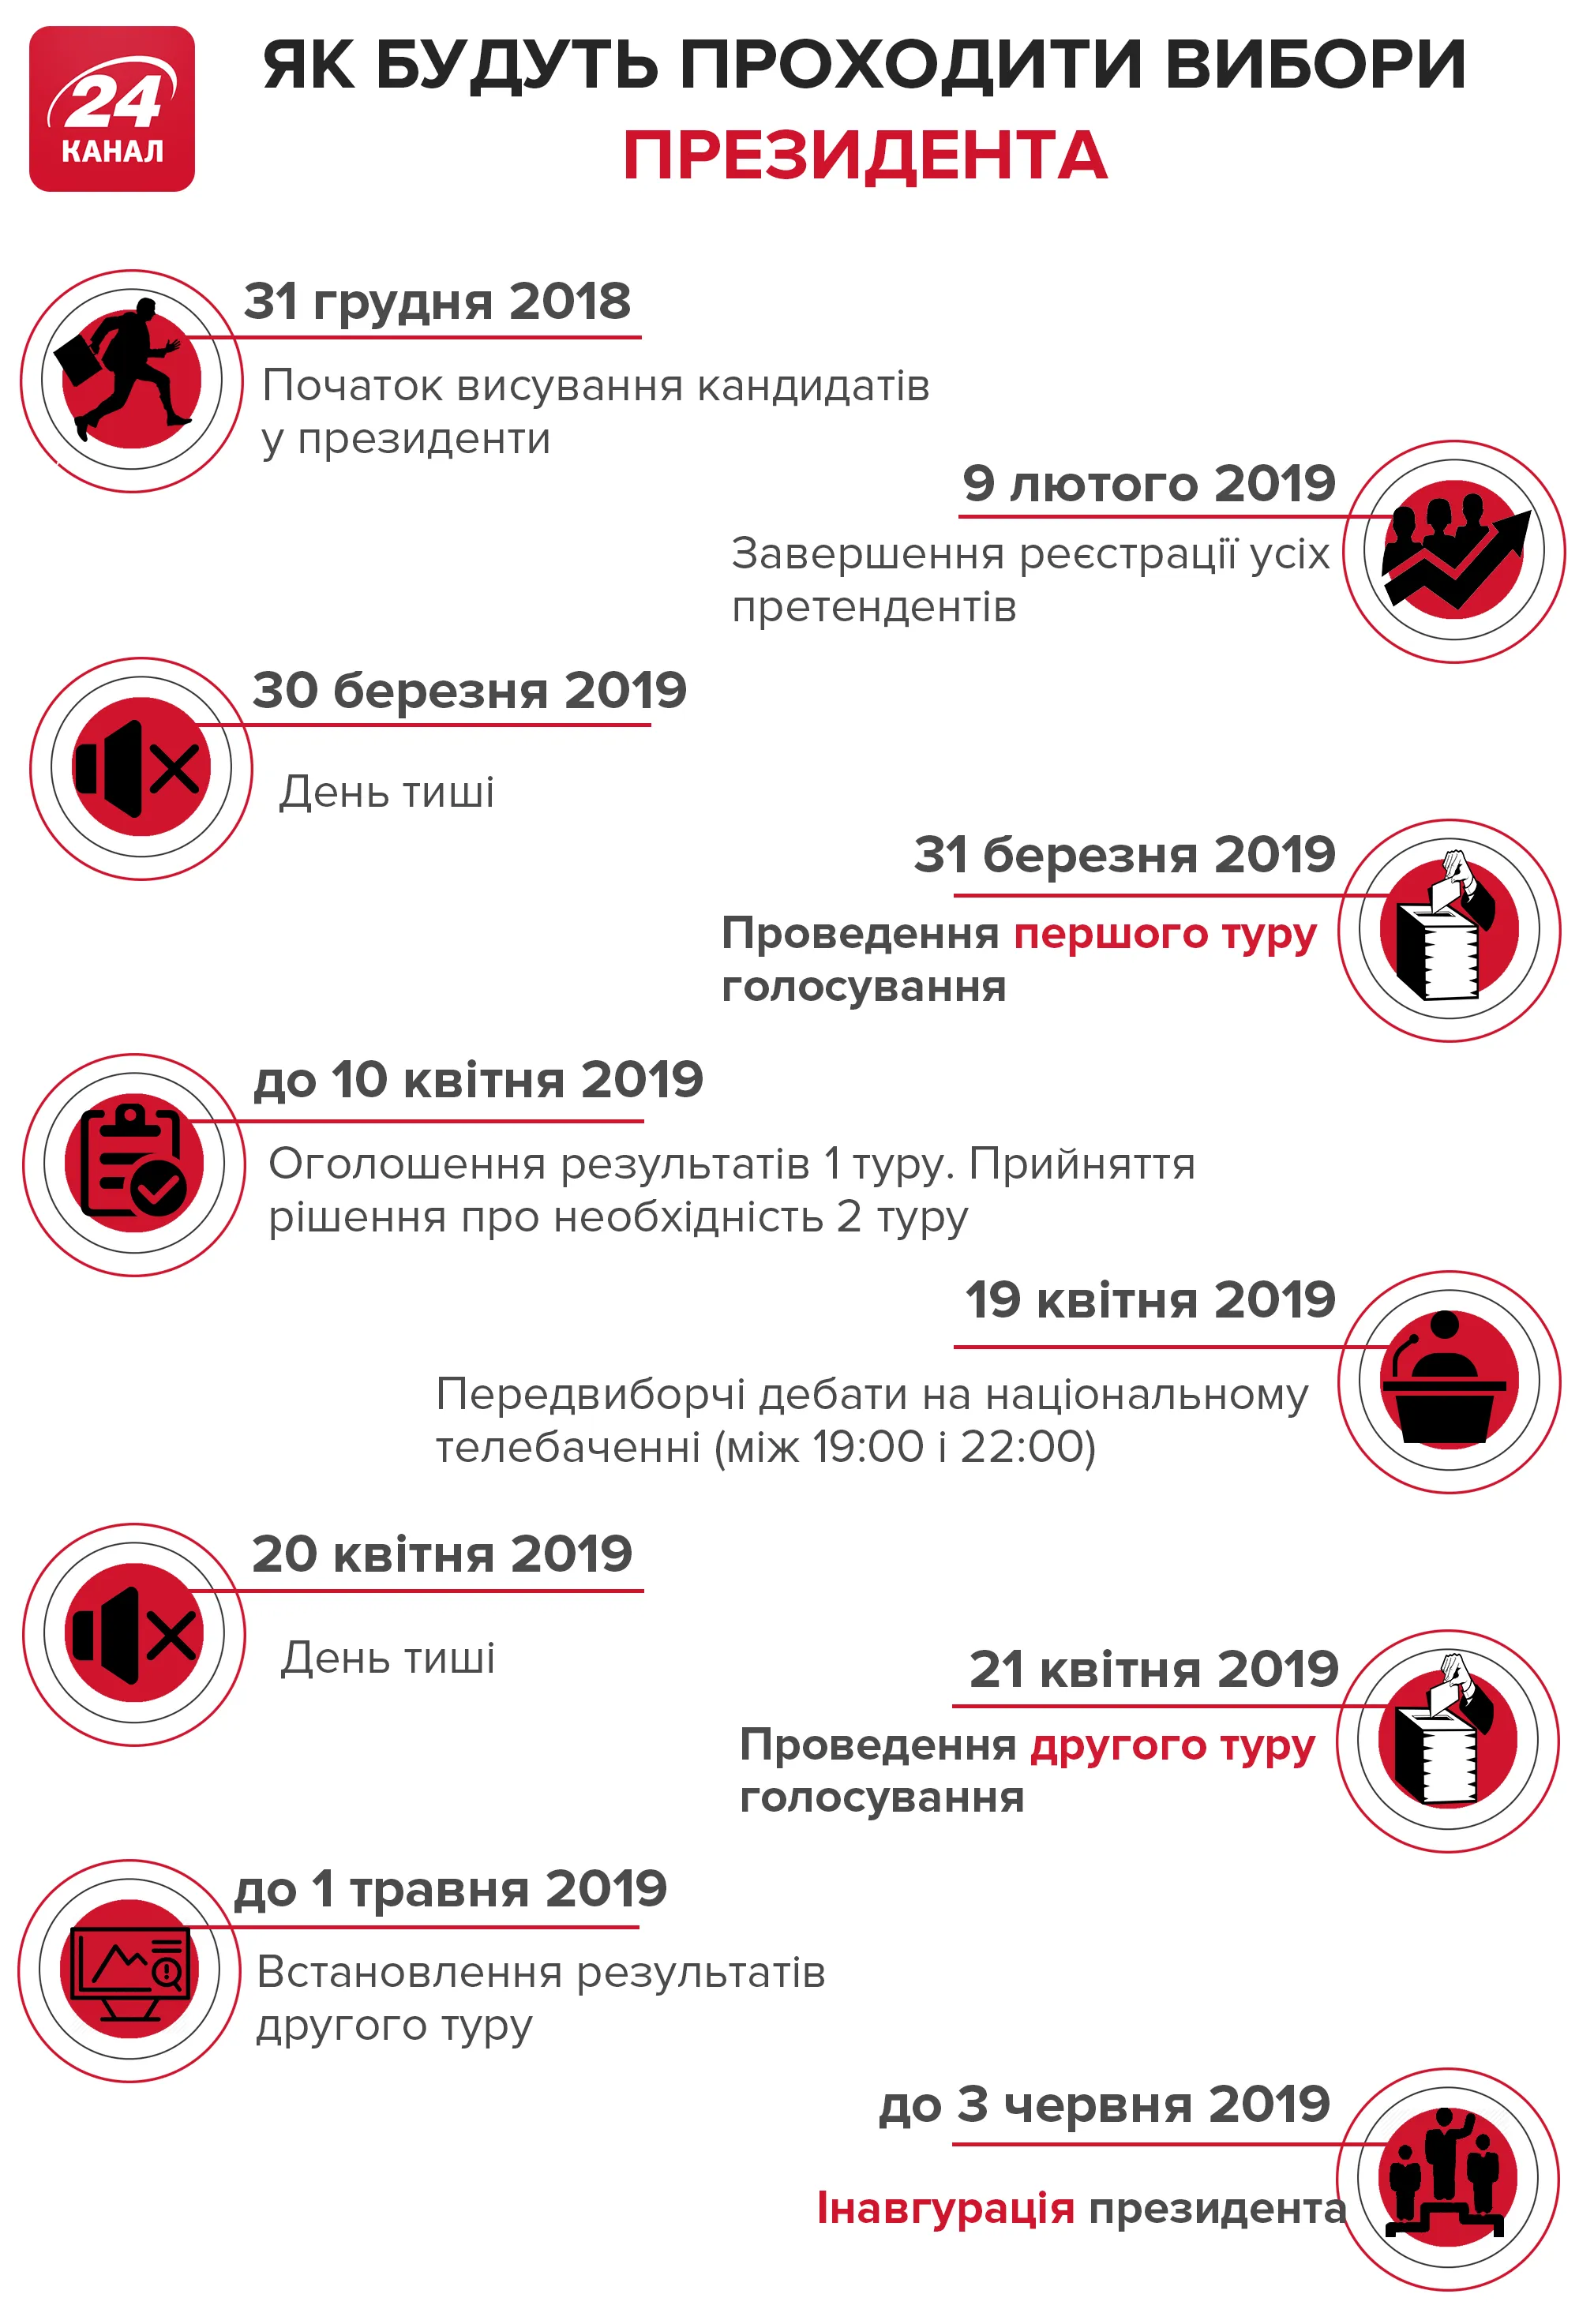 вибори 2019 головні дати